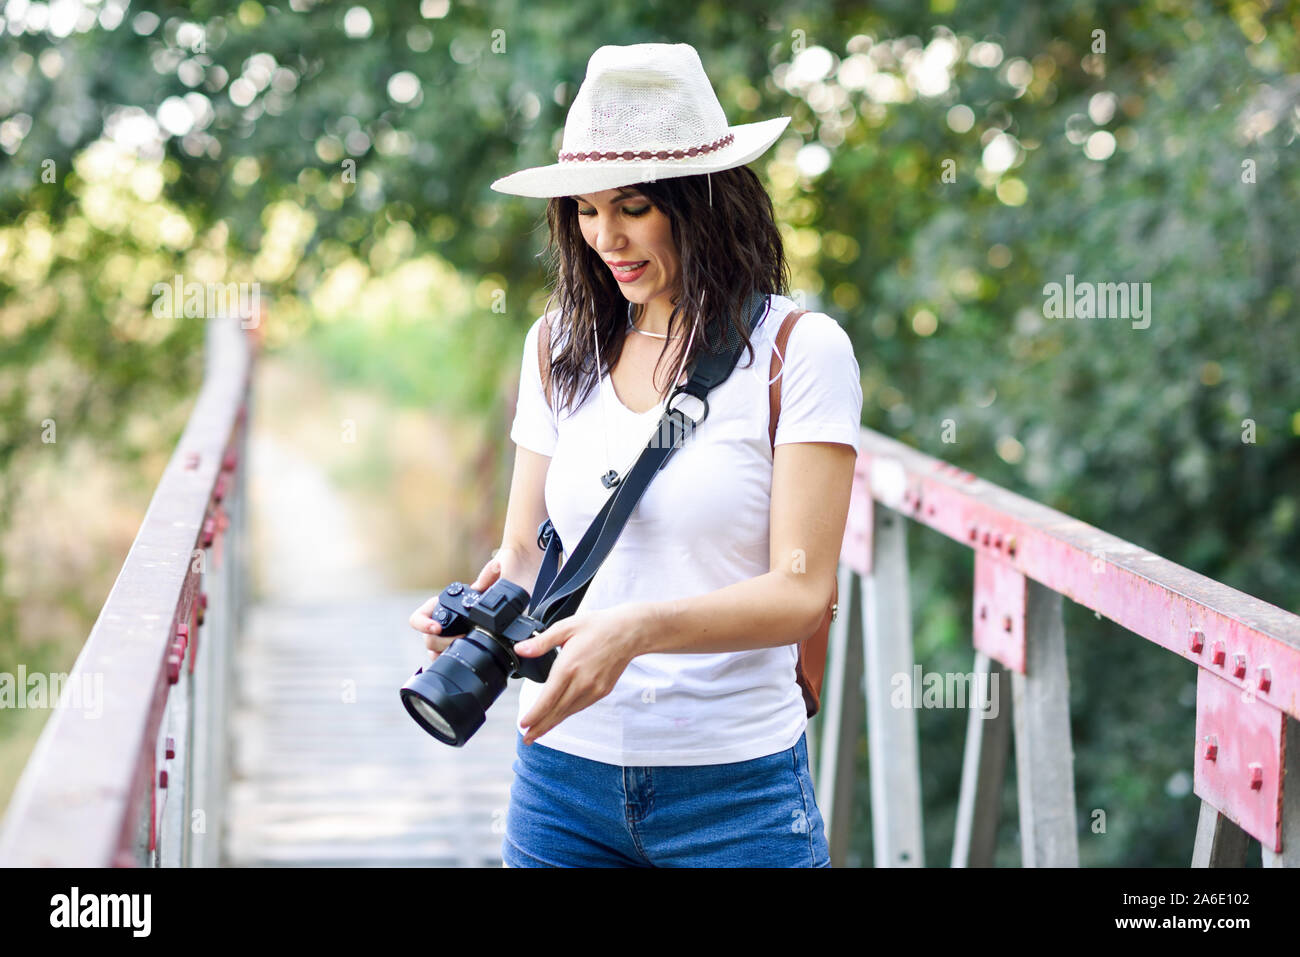 Escursionista donna scattare fotografie con una fotocamera mirrorless Foto Stock